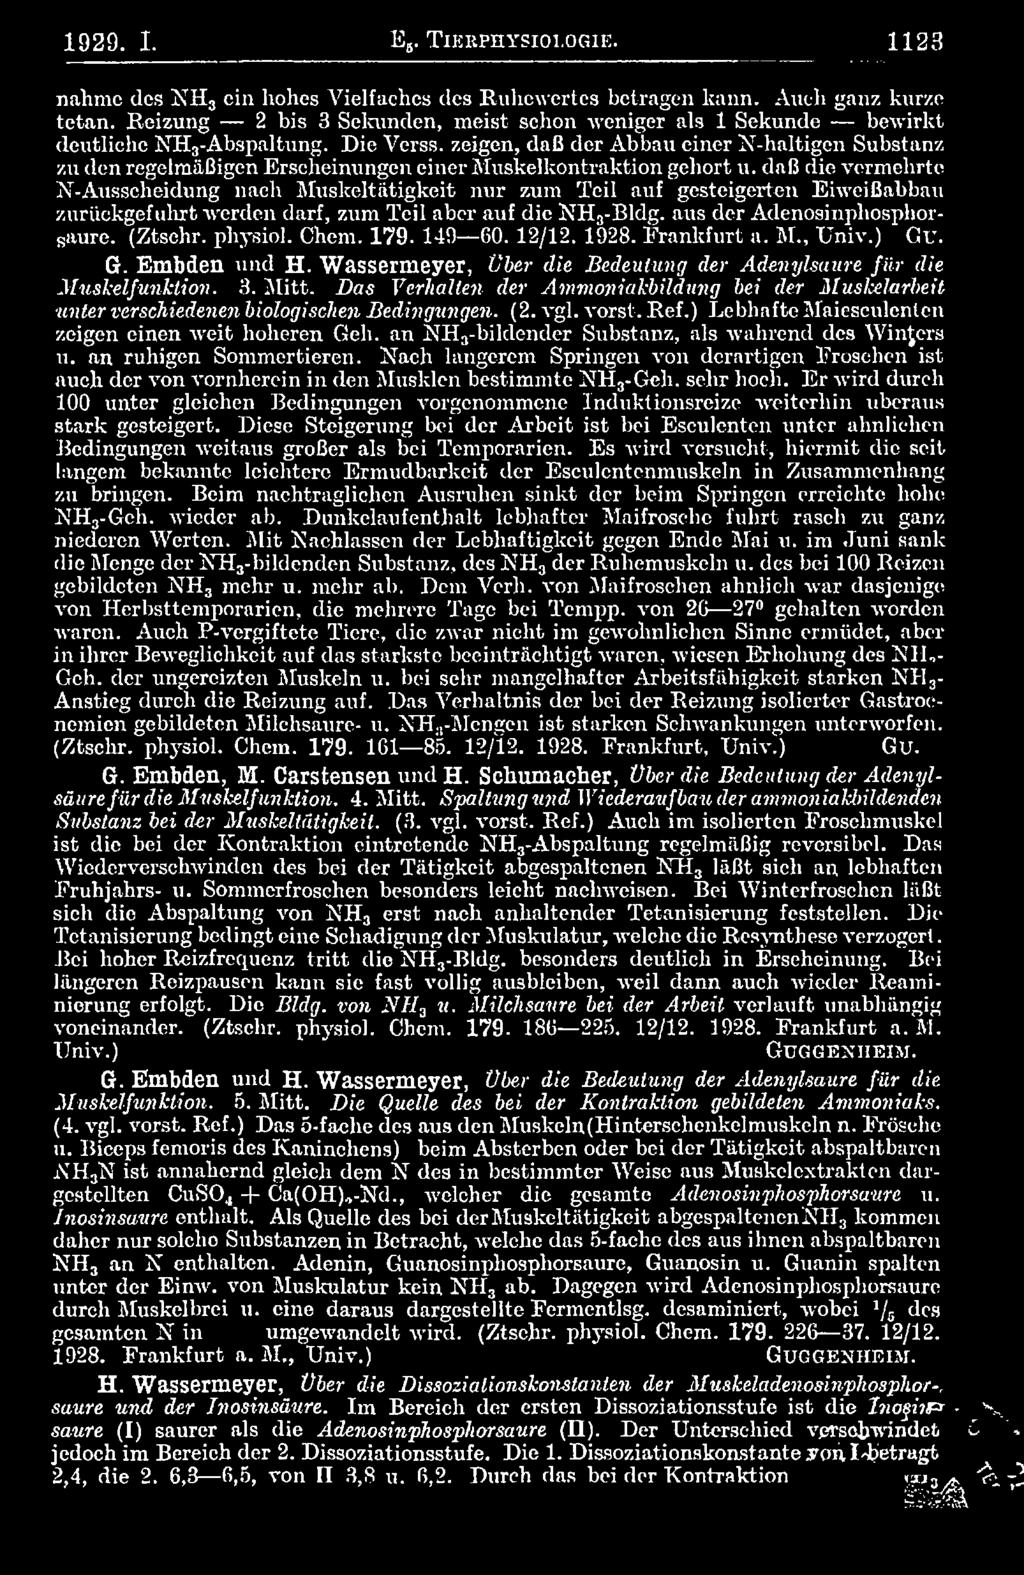 physiol. Chem. 179. 149 60.12/12. 1928. Frankfurt a. M., Univ.) Cu. G. Embden und H. Wassermeyer, Ober die Bedeutung der Adenylsuure fiir die Muskelfunklion. 3. Mitt.